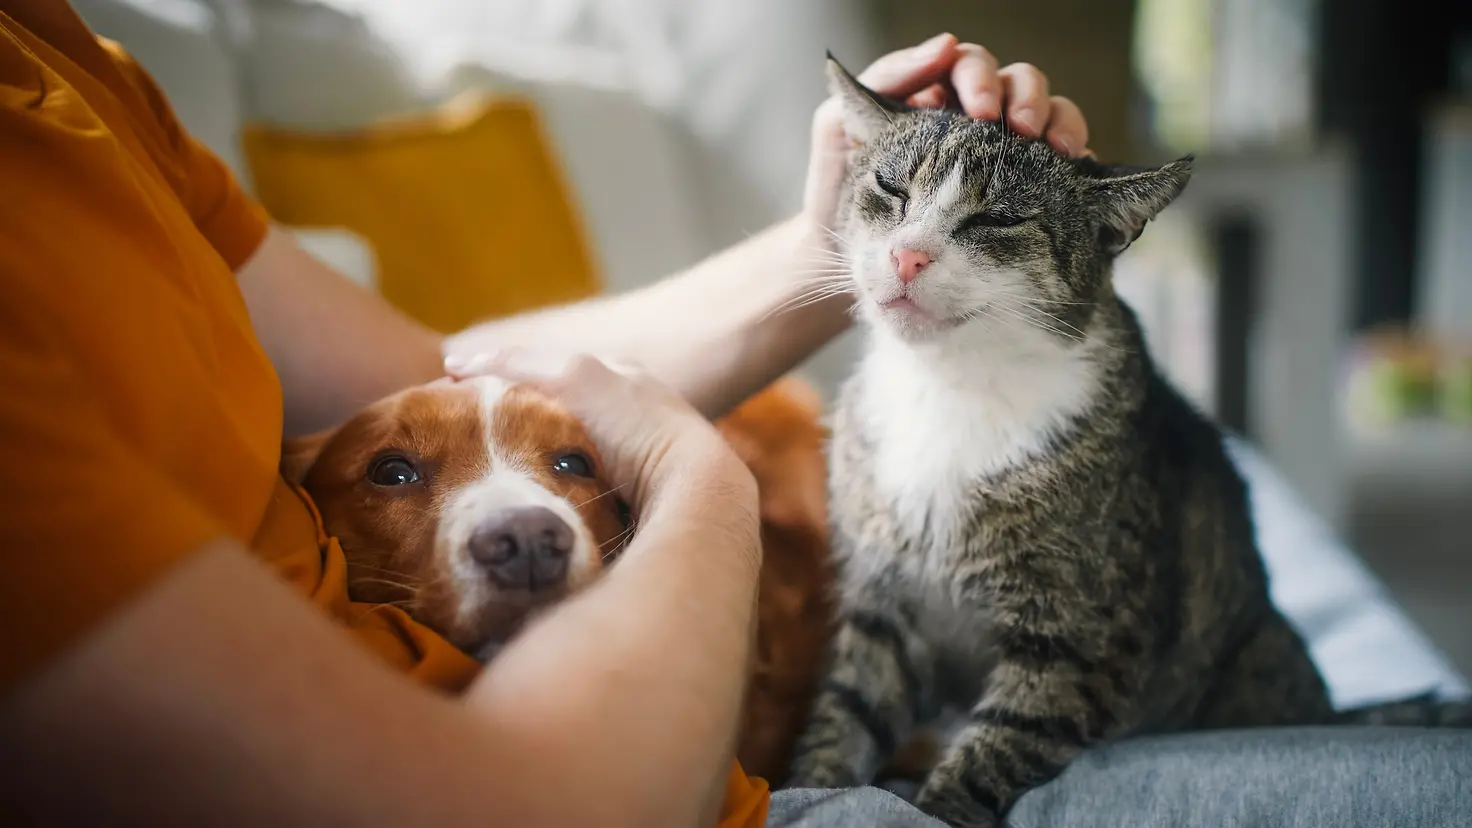 Auf dem Bild zu sehen sind ein Hund und eine Katze. Der Hund schmiegt sich in den rechten Arm des Menschen, der wiederum die Katze mit der linken Hand über den Kopf streichelt.